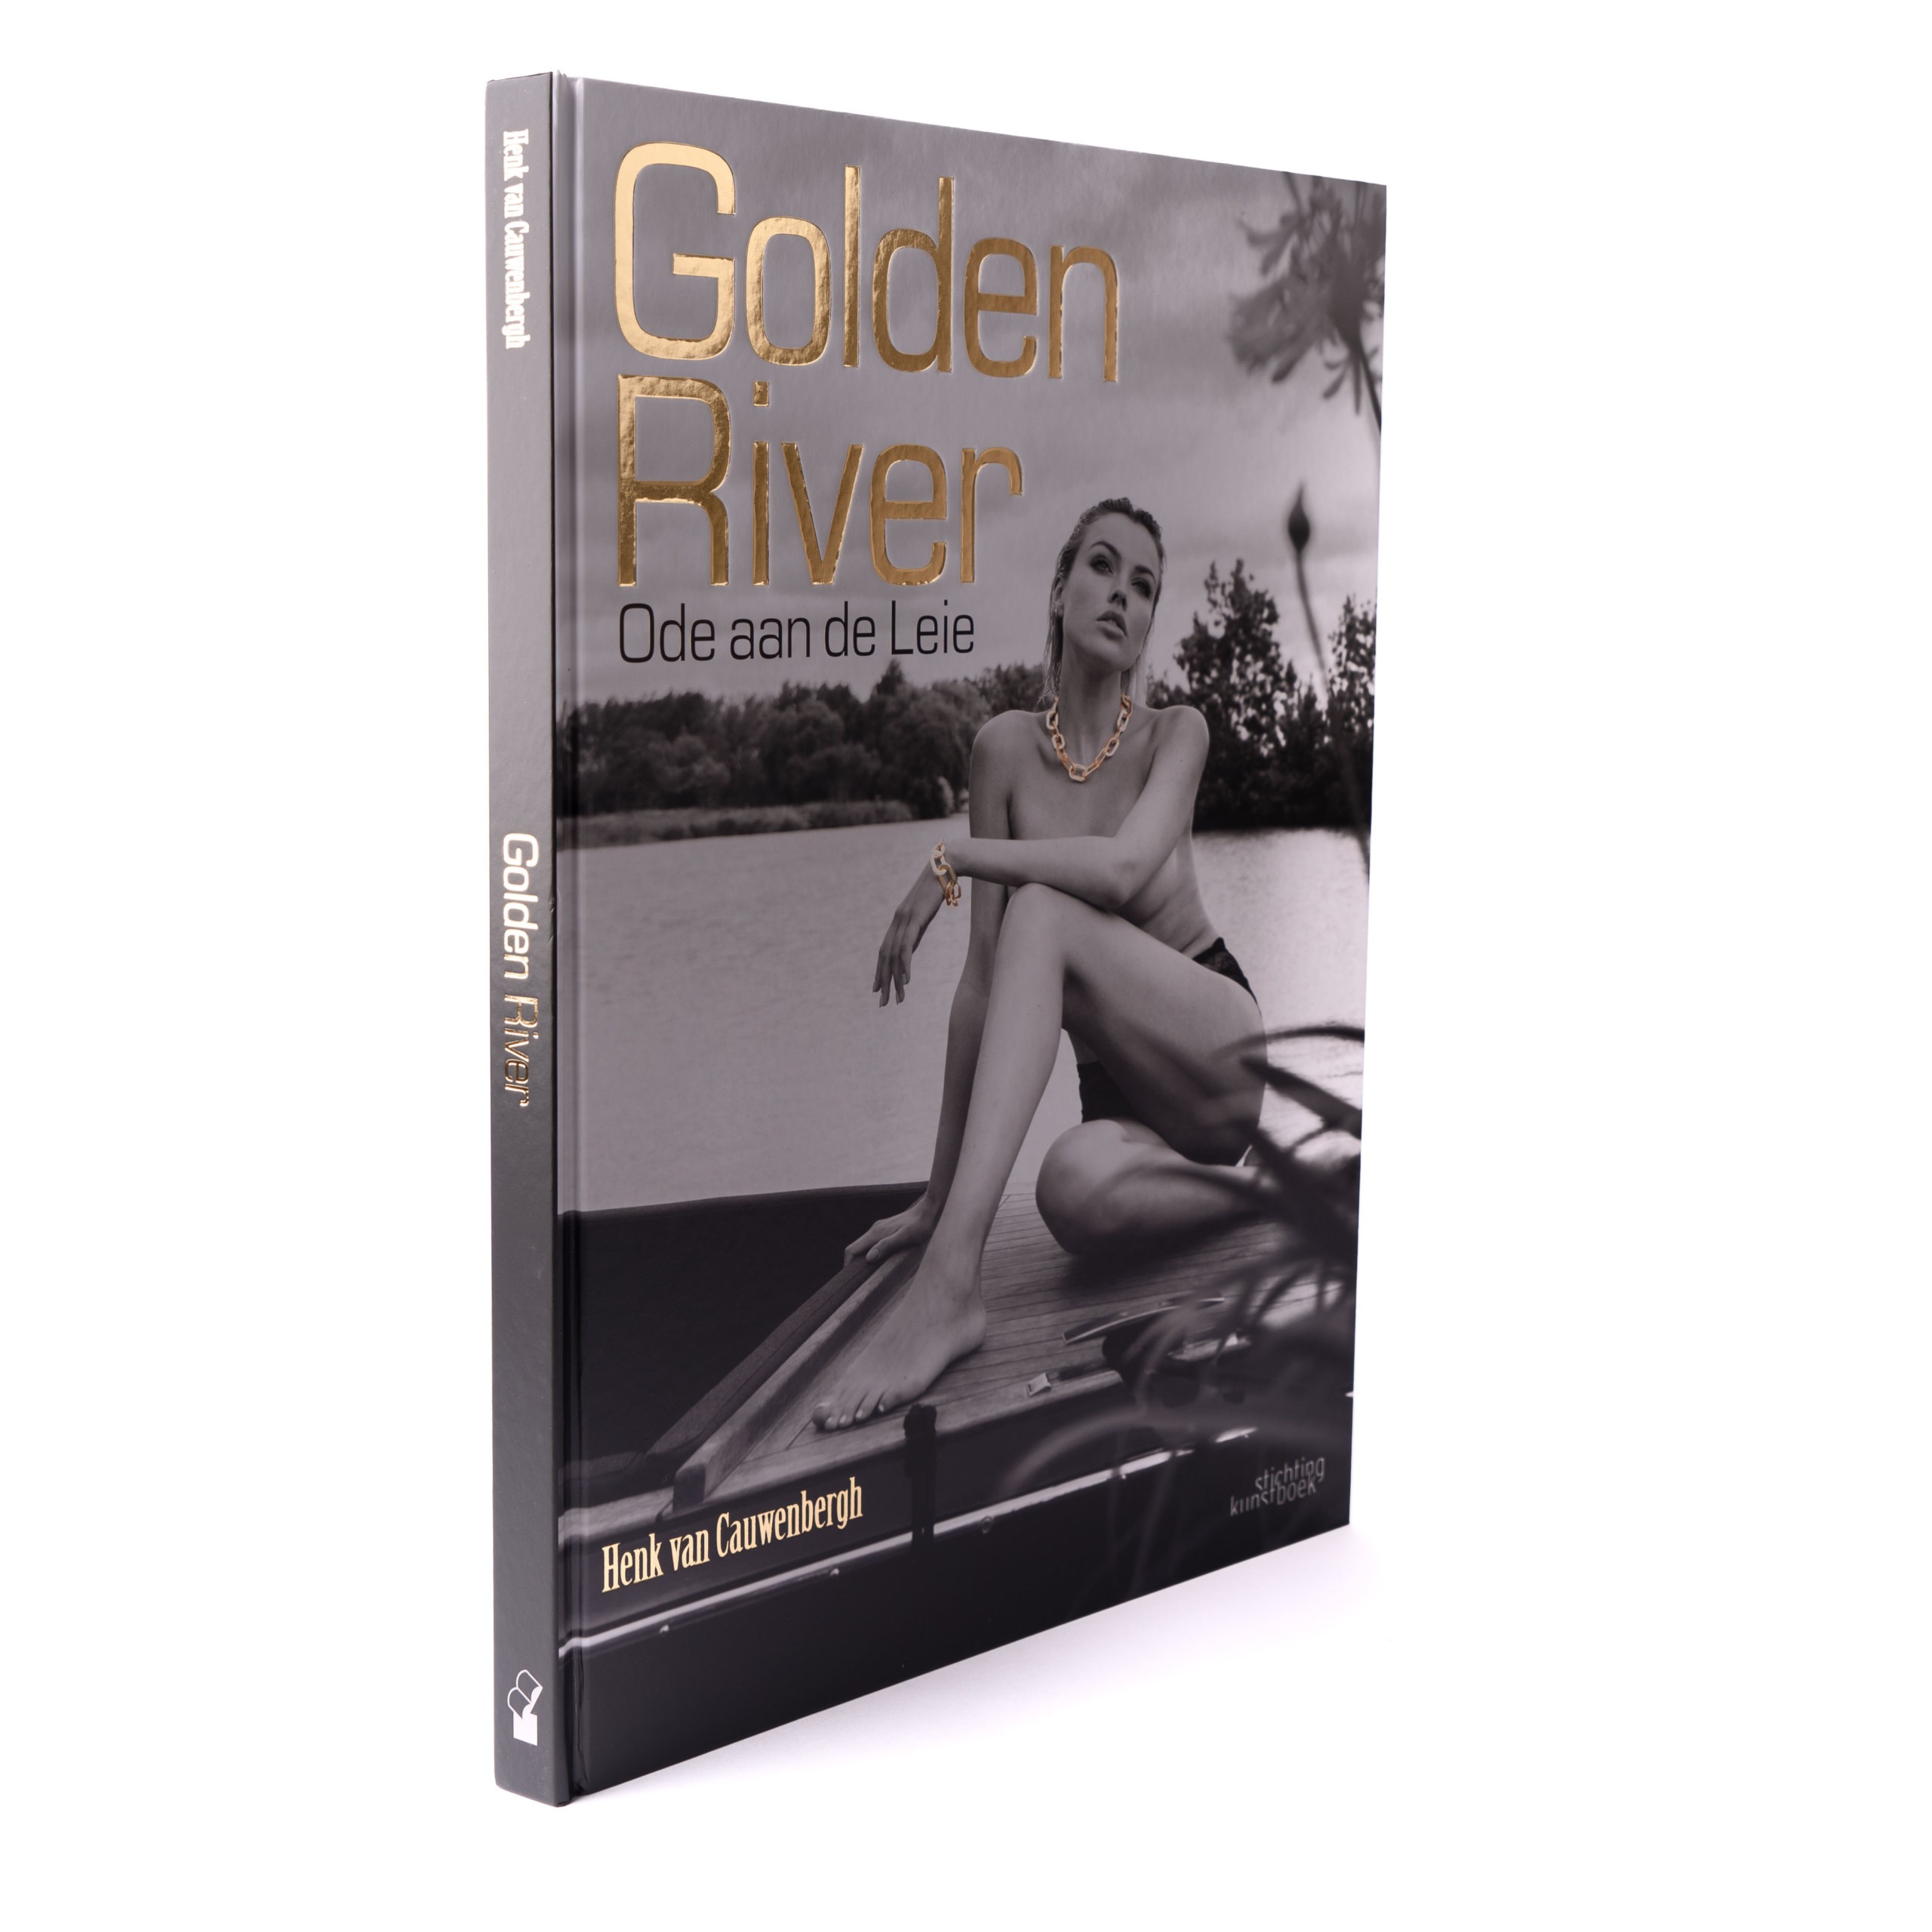 Golden River book by Henk van Cauwenbergh